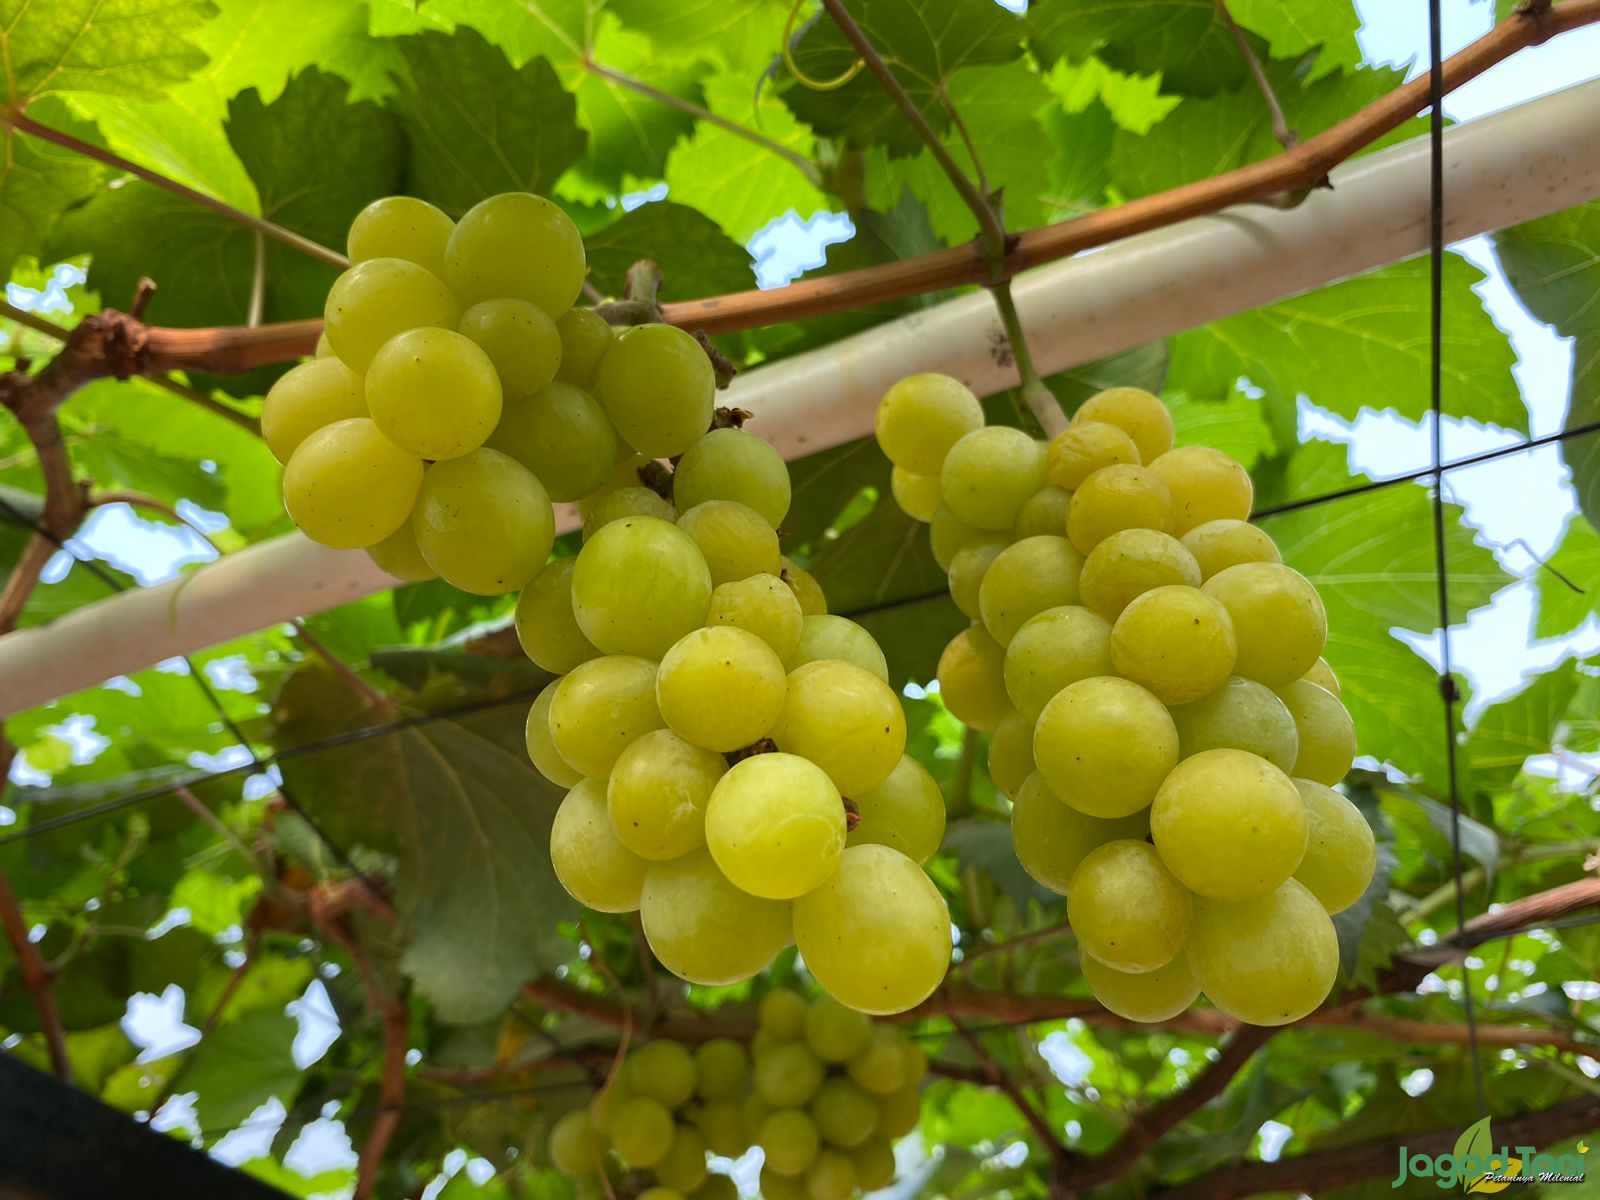 Manfaat buah anggur hijau